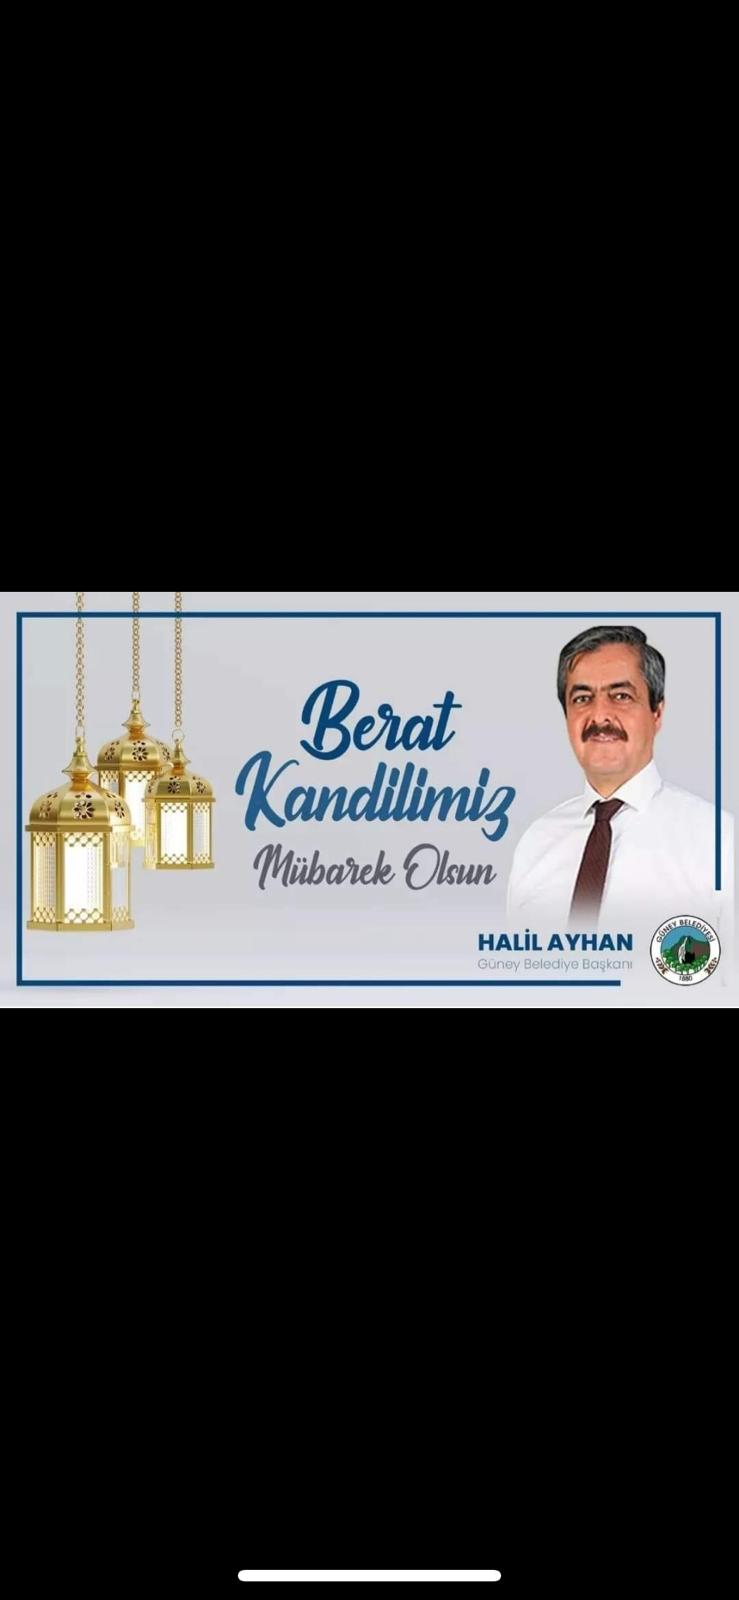 Güney Belediye Başkanı Halil Ayhan Berat Kandilini Kutladı! 